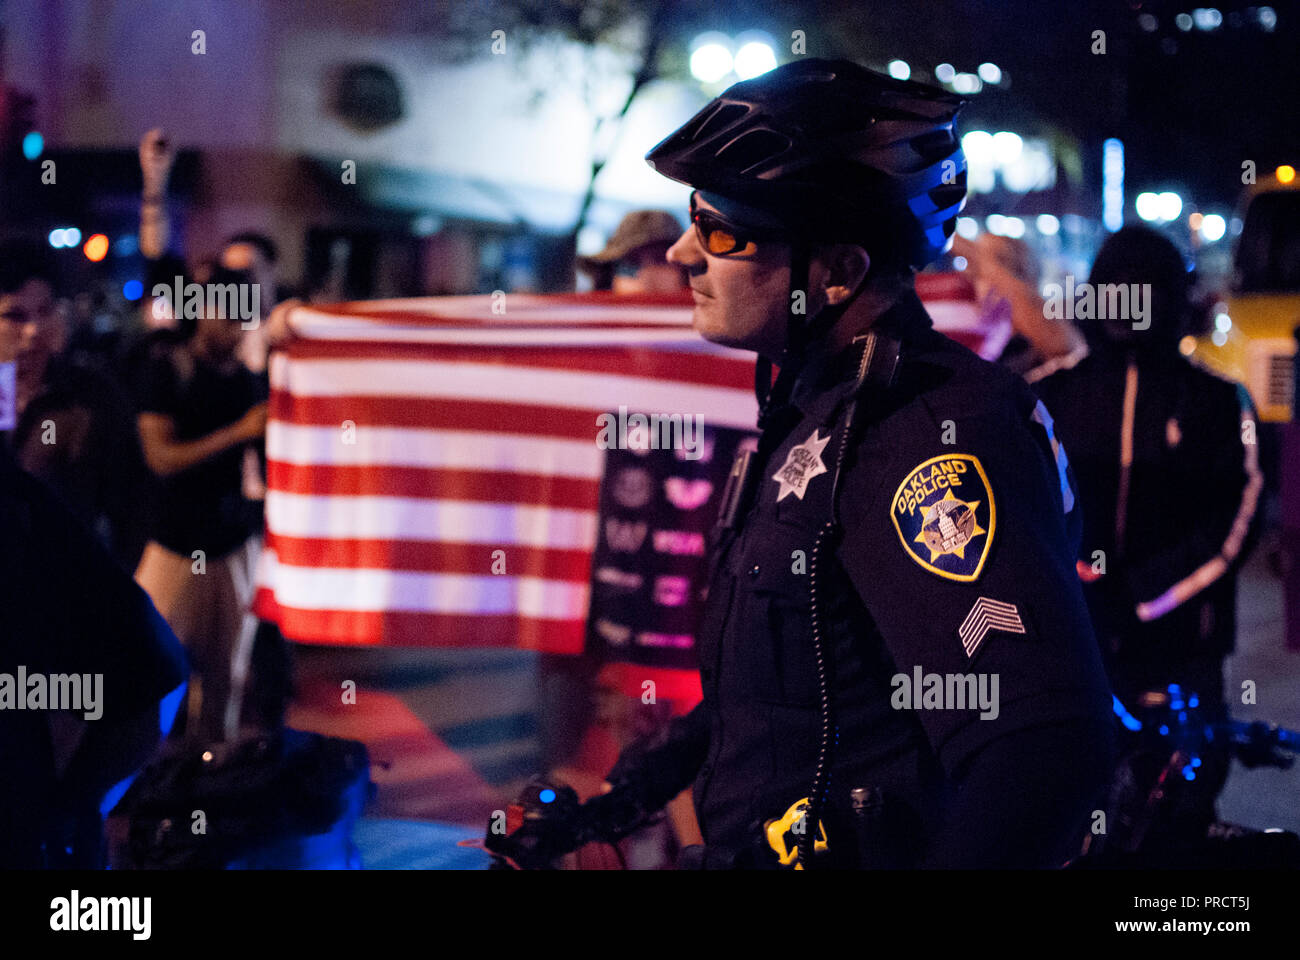 Un oficial de la policía de Oakland bicicleta relojes de los manifestantes contra la elección del presidente Donald Trump en el centro de las protestas del 9 de noviembre de 2016. Foto de stock